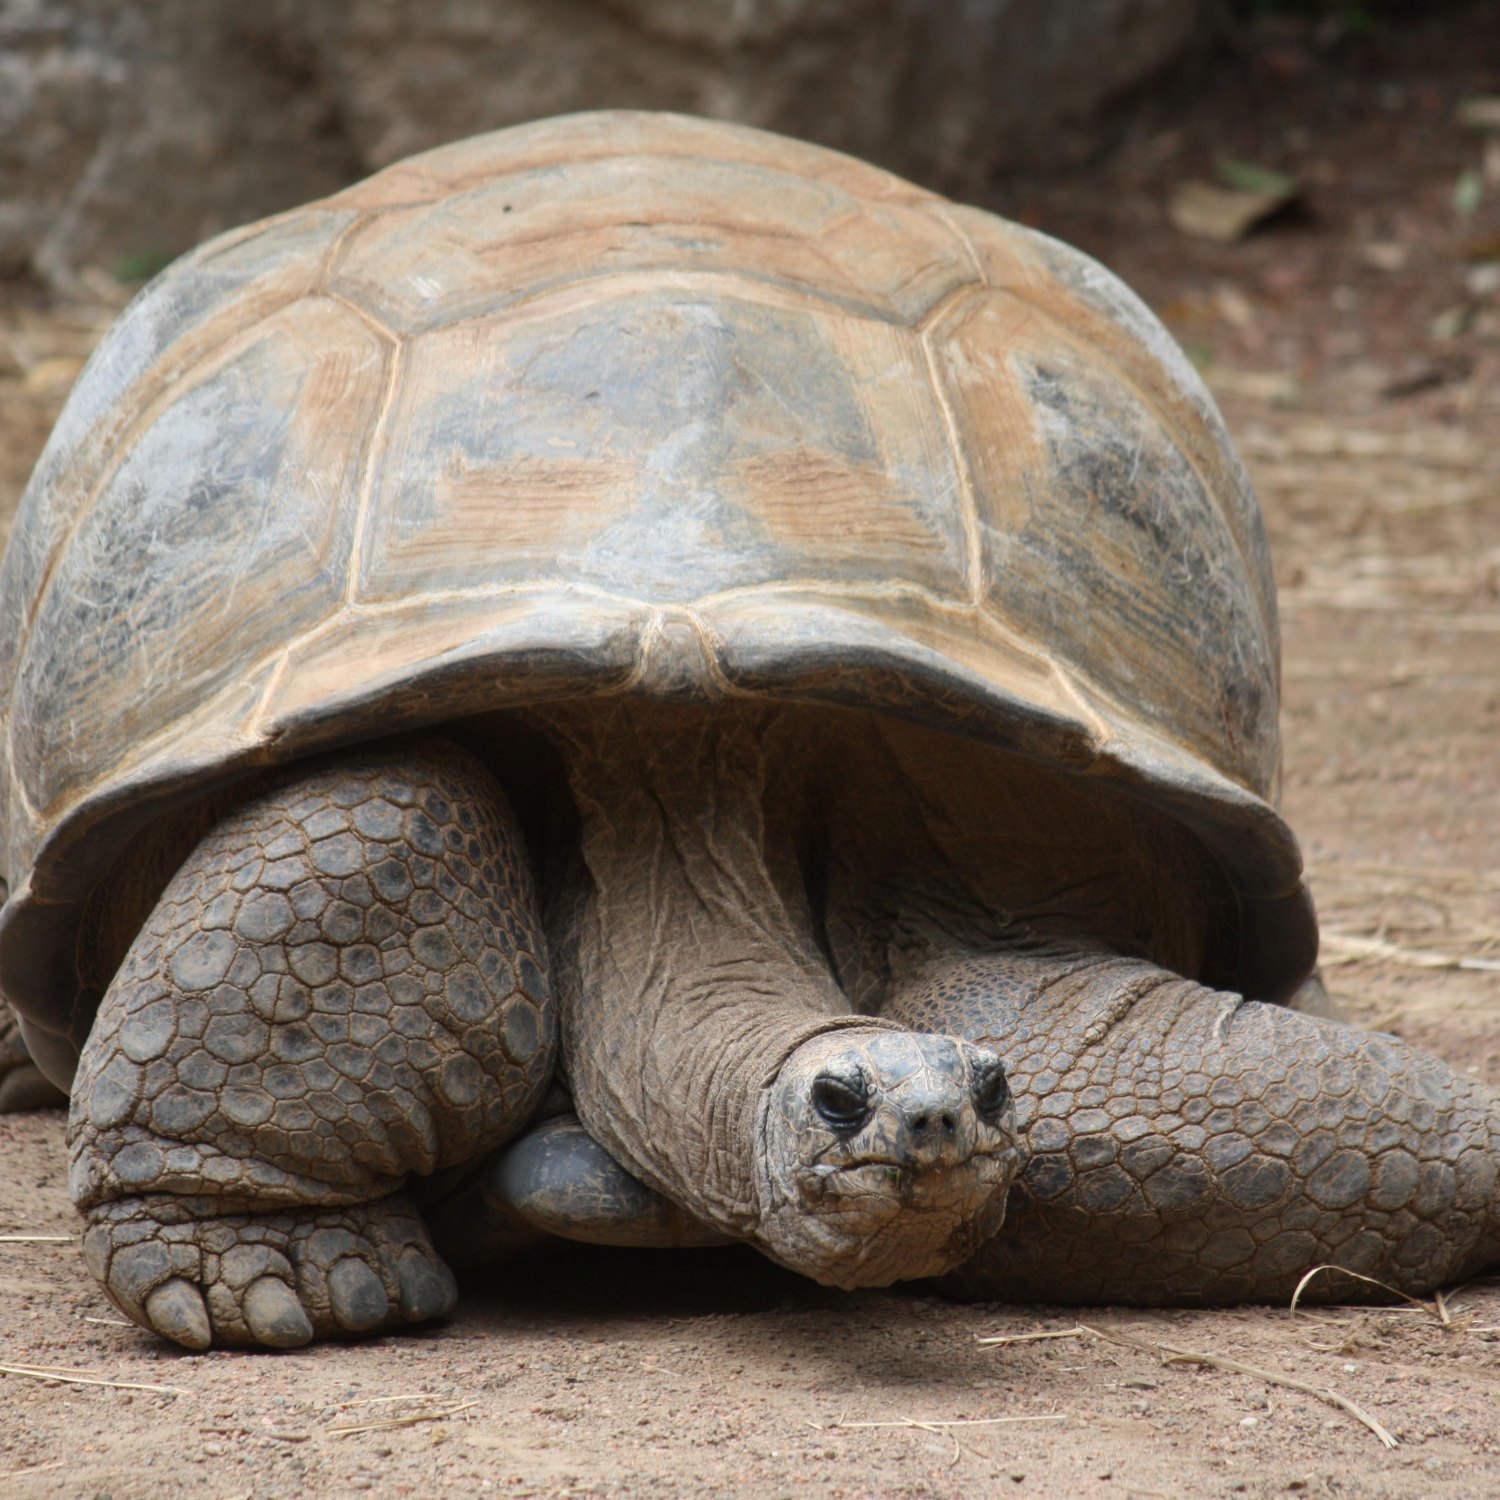 Aldabra Giant Tortoise